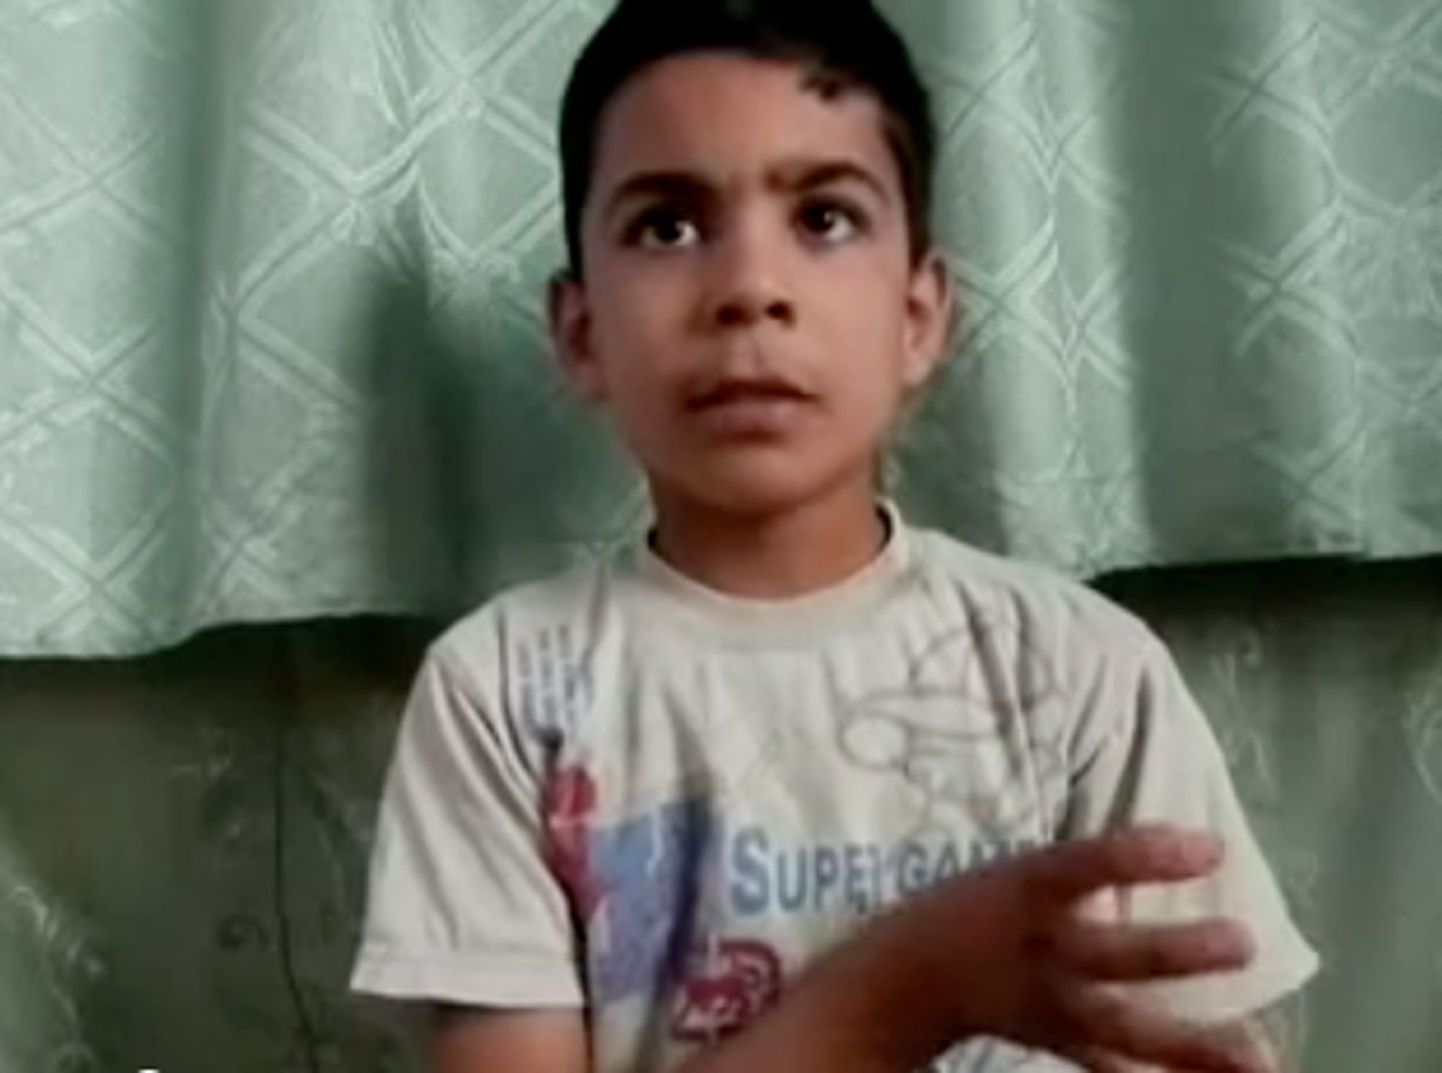 Houla veresaunast ellu jäänud 11-aastane Ali el-Sayed